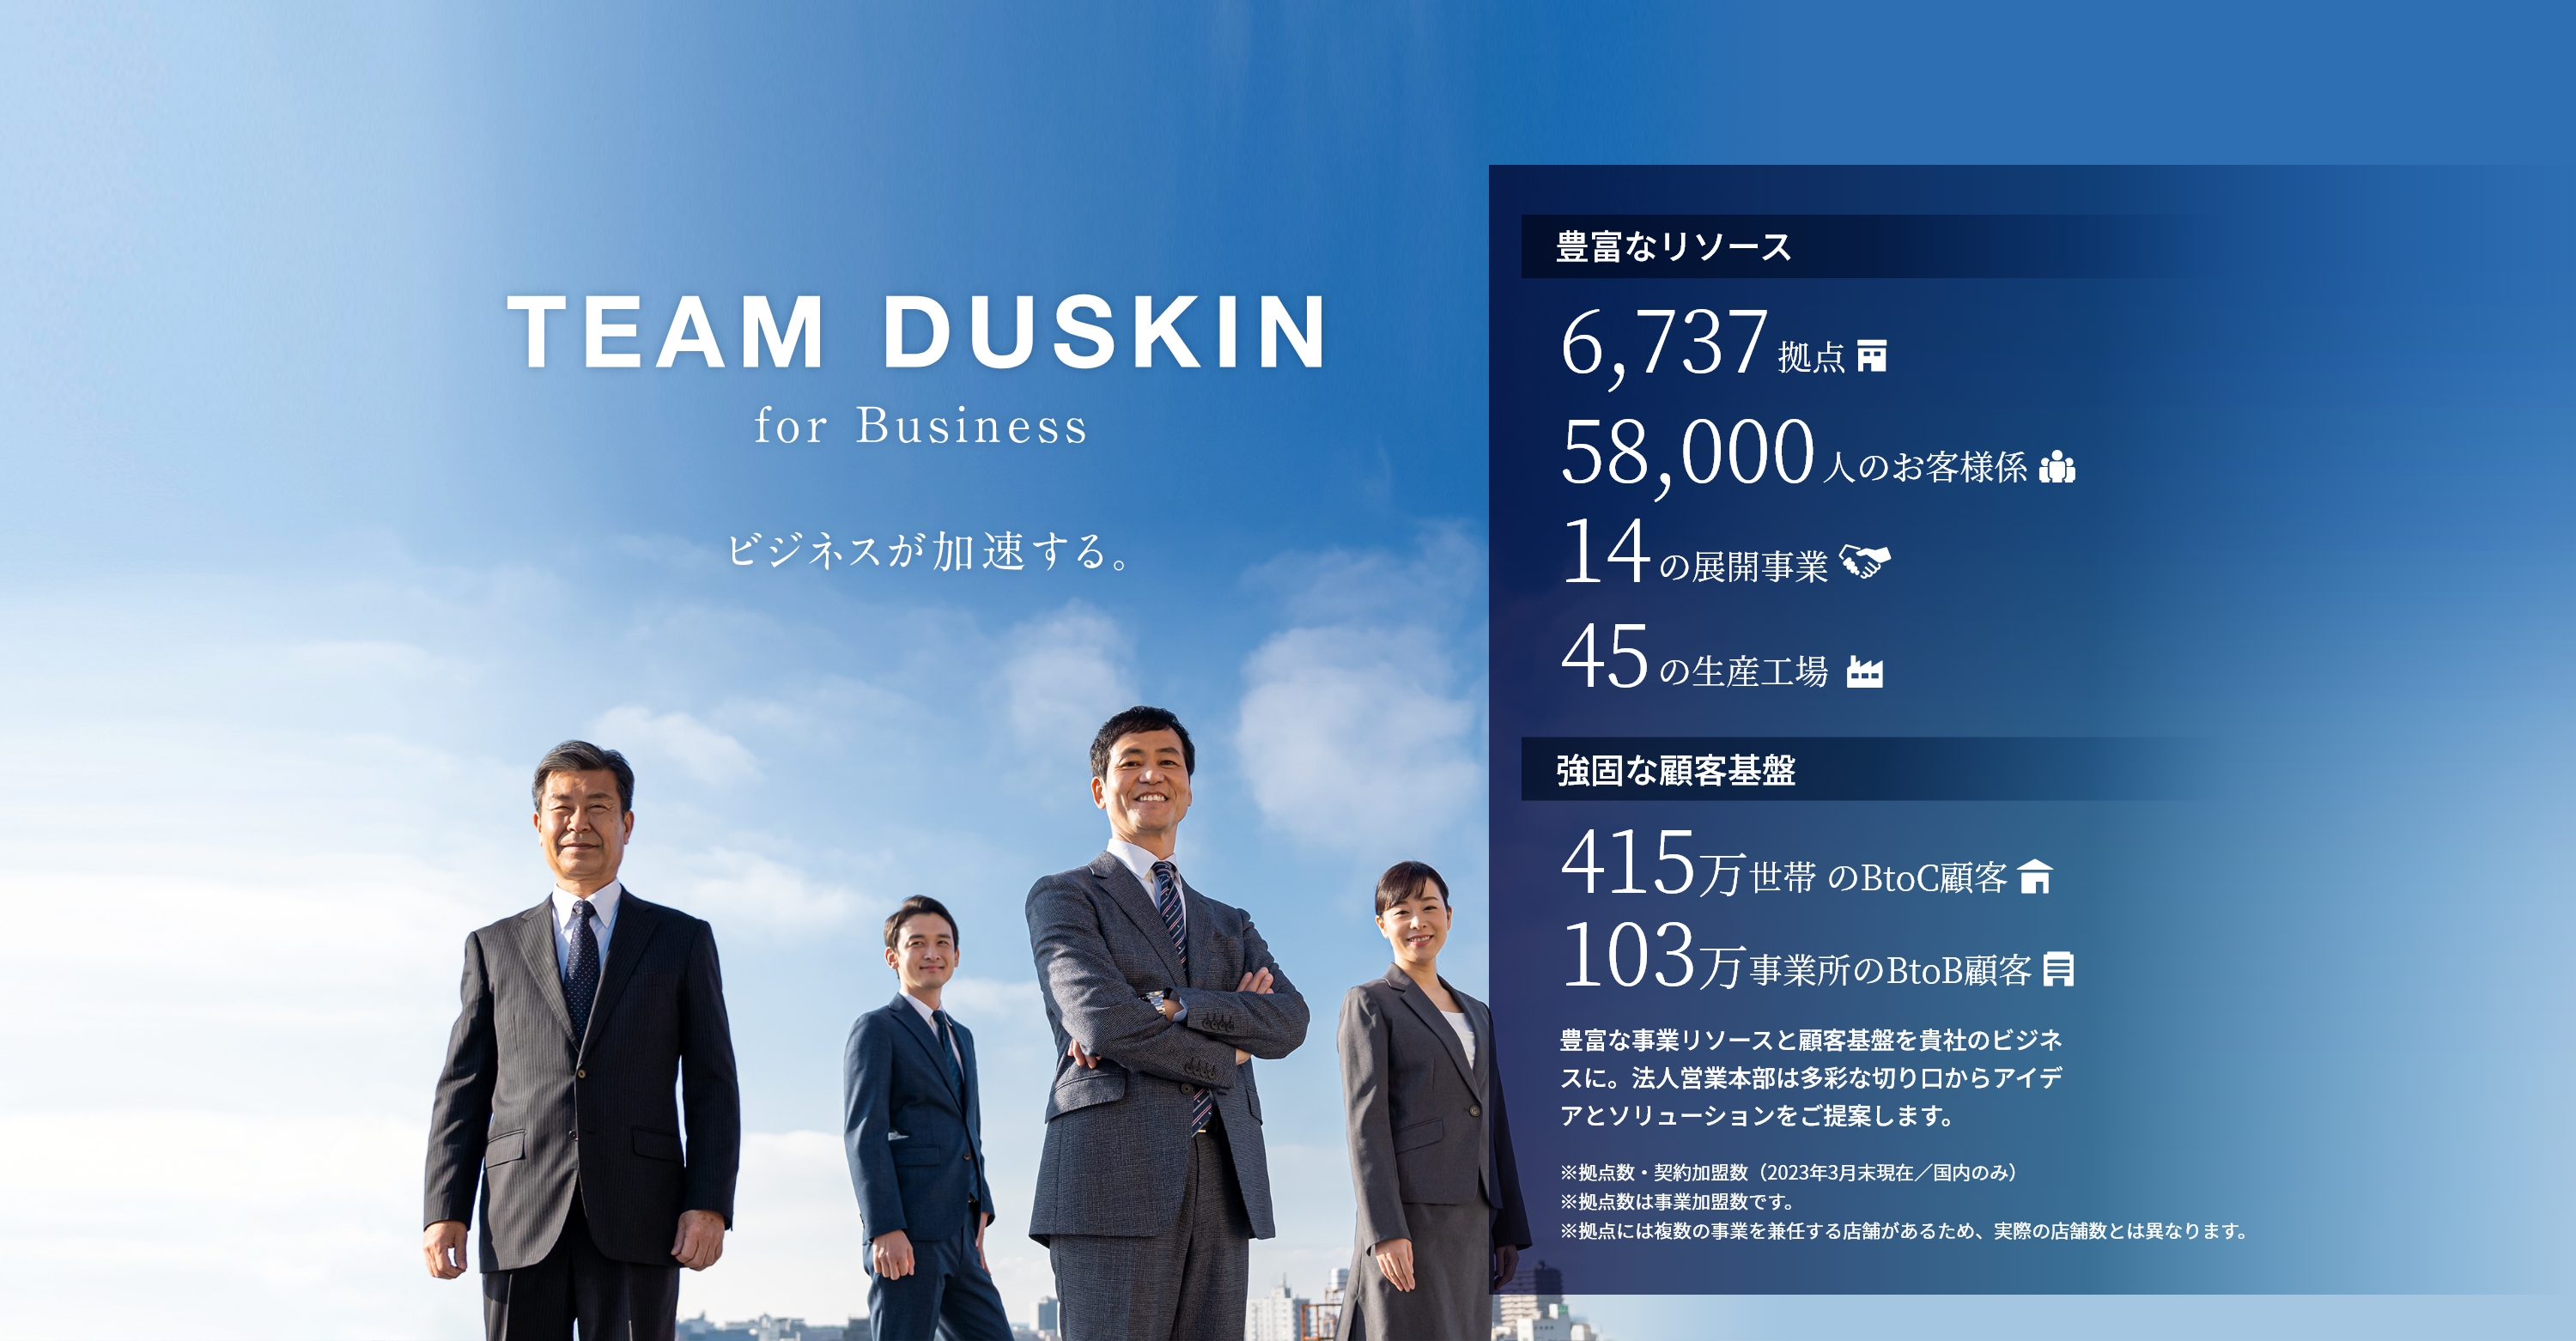 TEAM DUSKIN for business - ビジネスが加速する